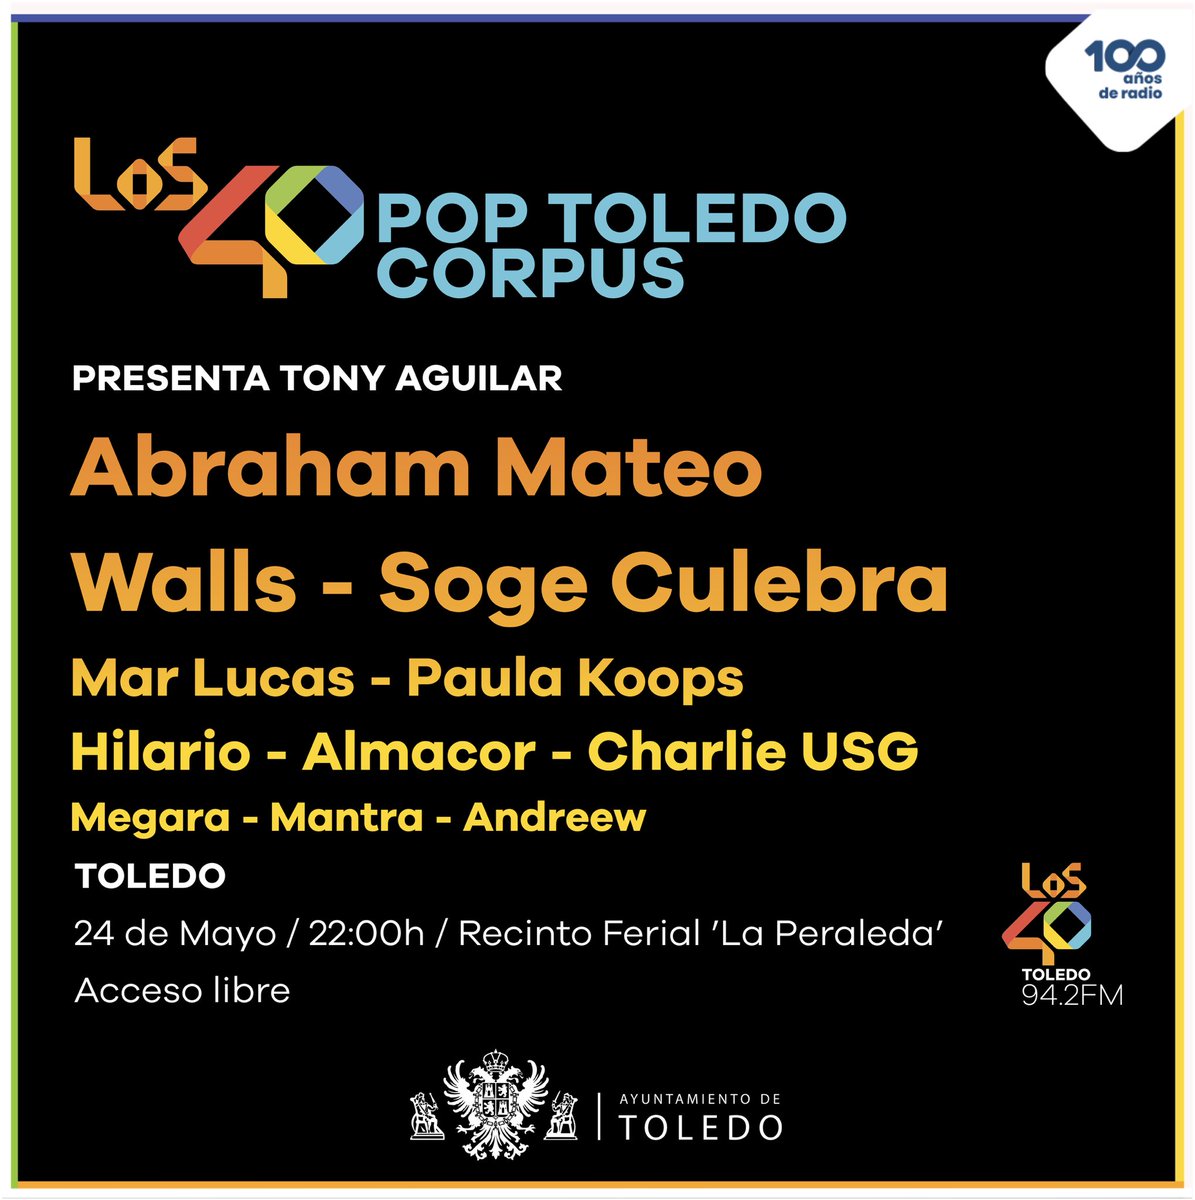 🔥 Aquí tienes el cartel completo de #LOS40PopToledo #corpus2024🔥 🎙️ @TonyAguilarOfi presenta la 11a edición del #festival #pop más multitudinario al aire libre y gratuito de #CastillaLaMancha 🗓️ 24/05 📍 Recinto ferial ‘La Peraleda’ ⏰ 22:00h ¡Acceso libre!